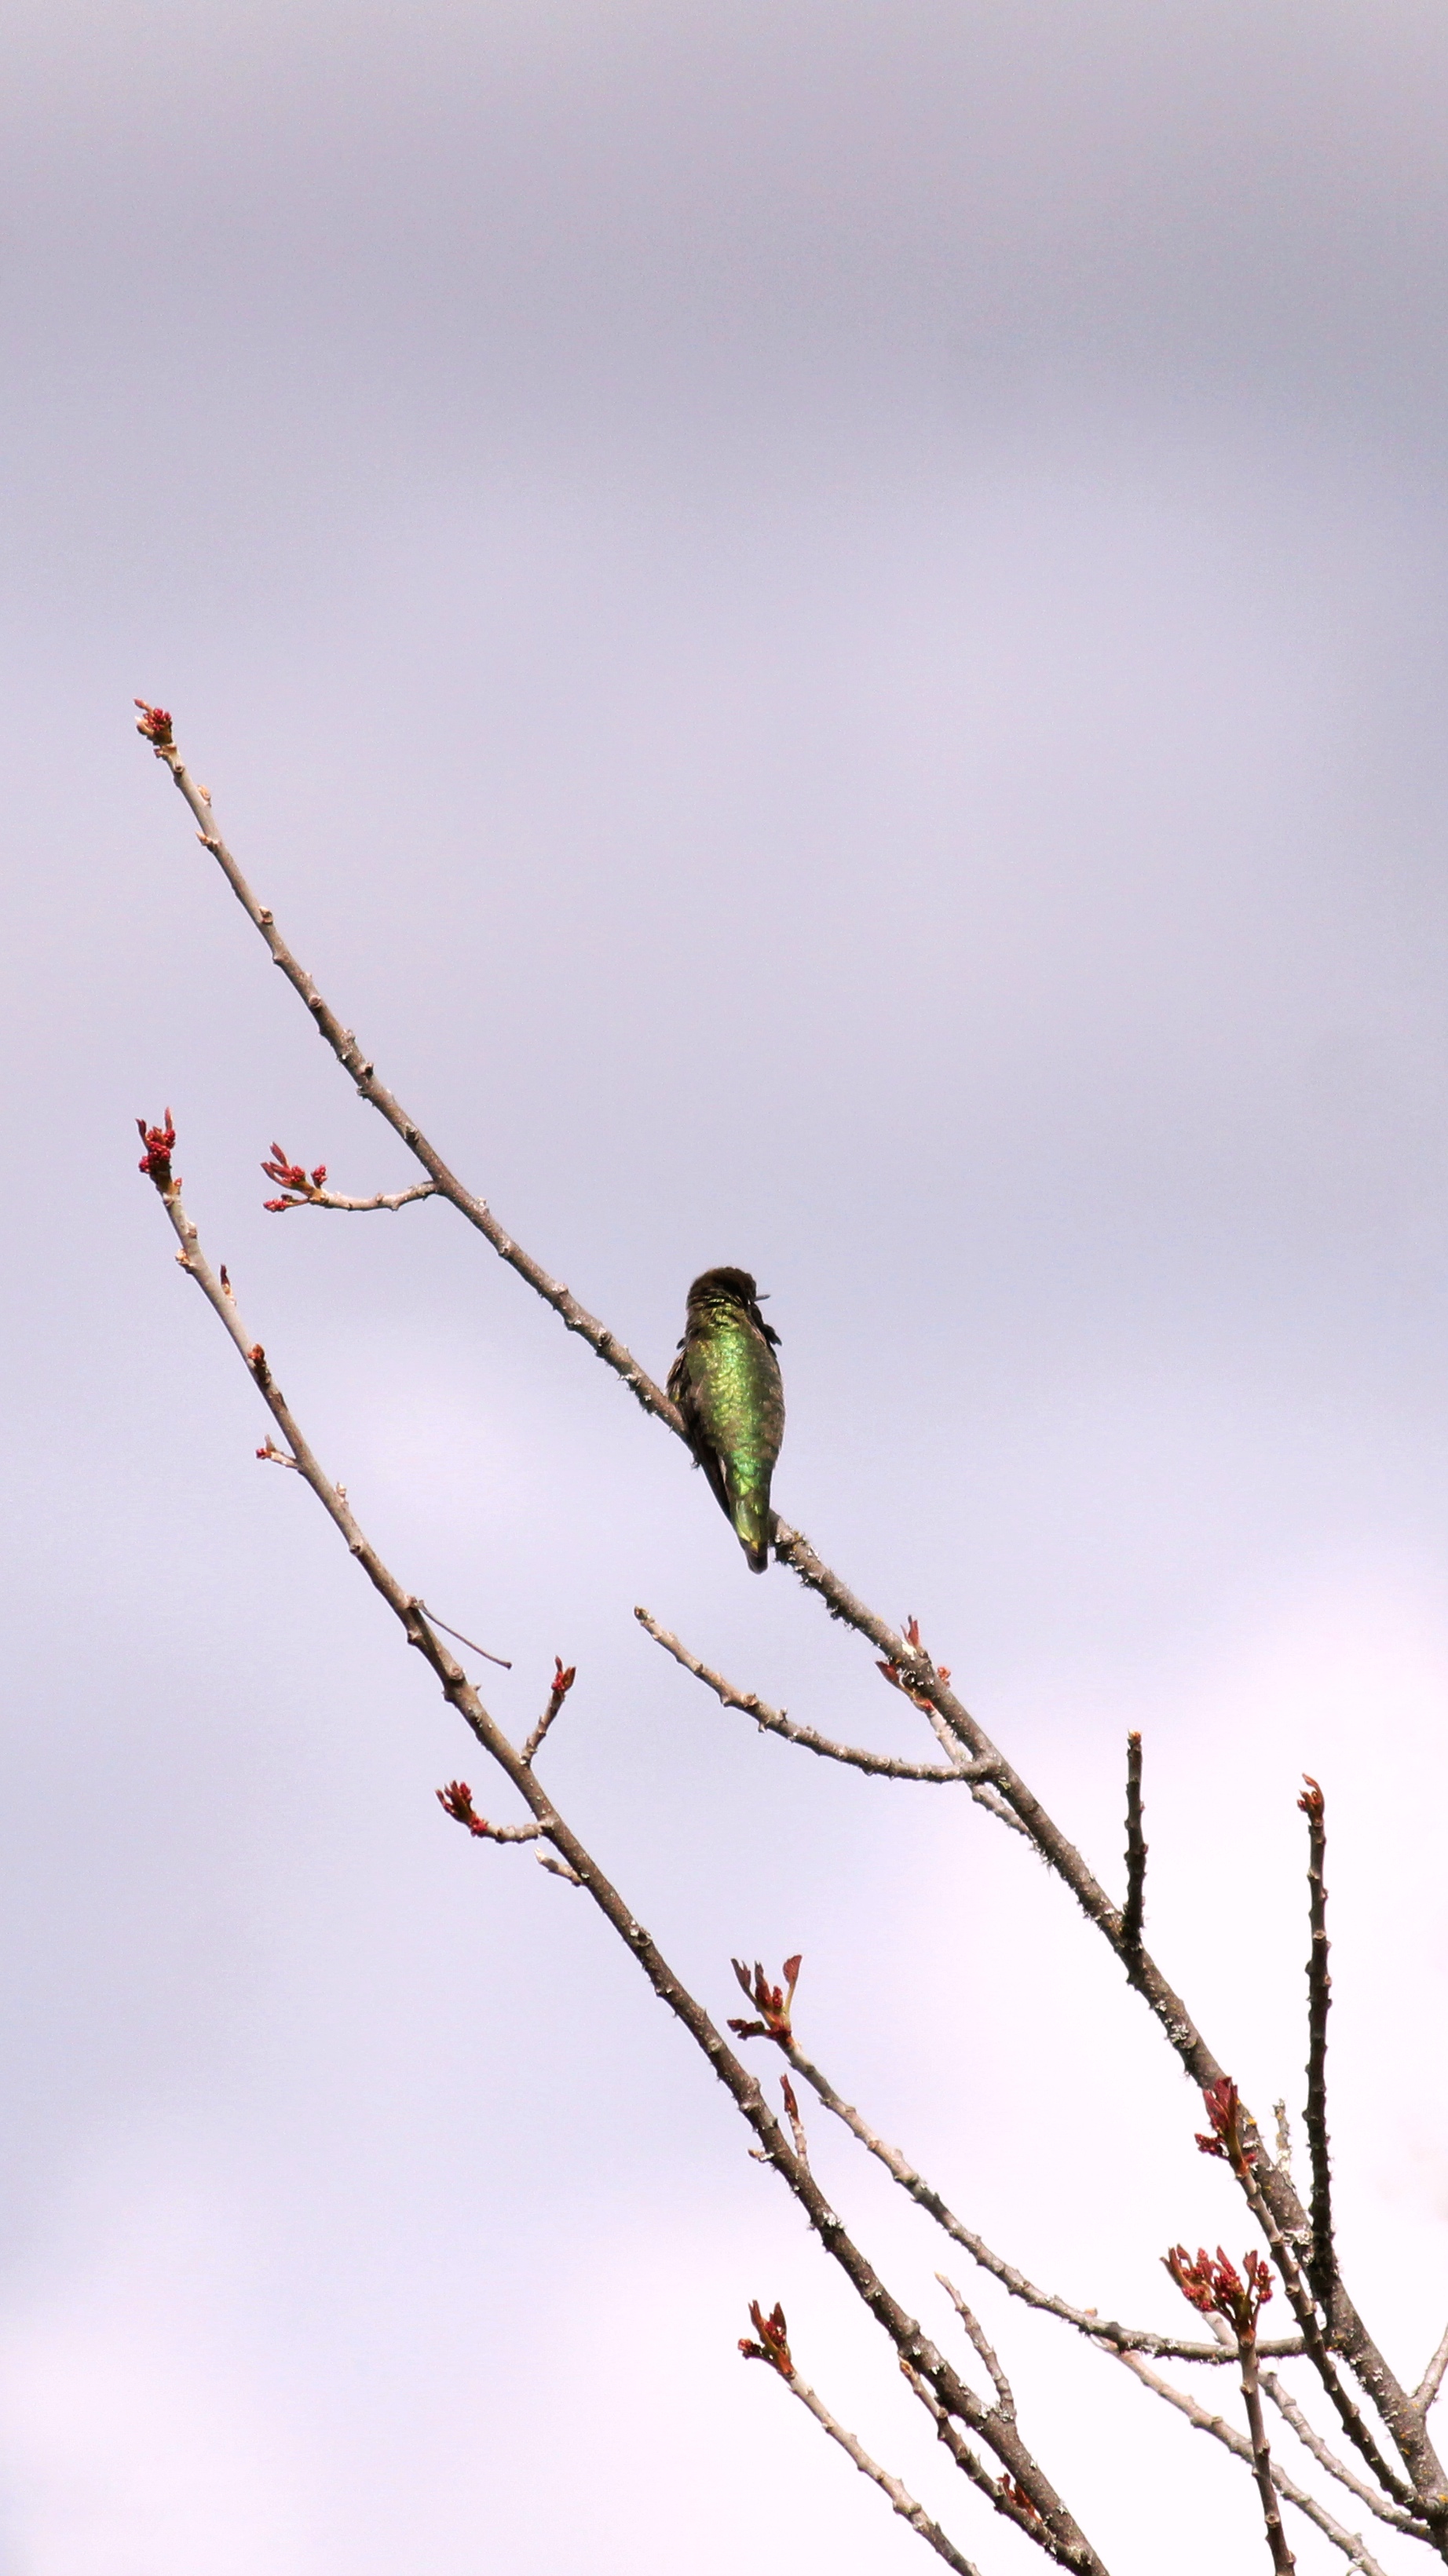 A green bird on a branch.